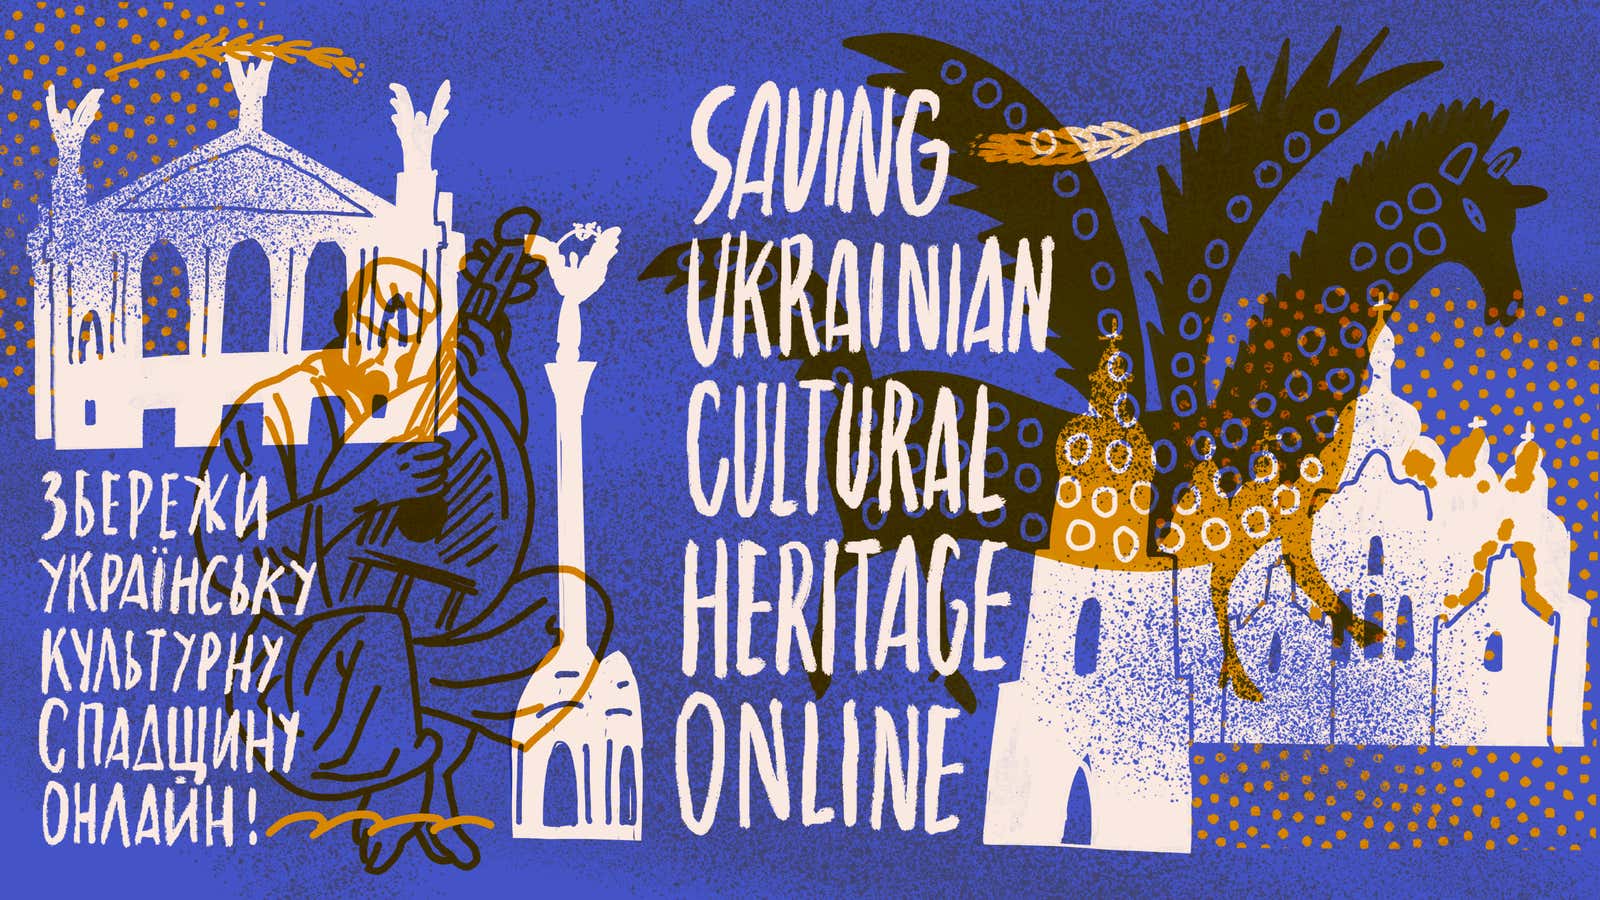 How to Stop Ukrainian Websites From Vanishing During War